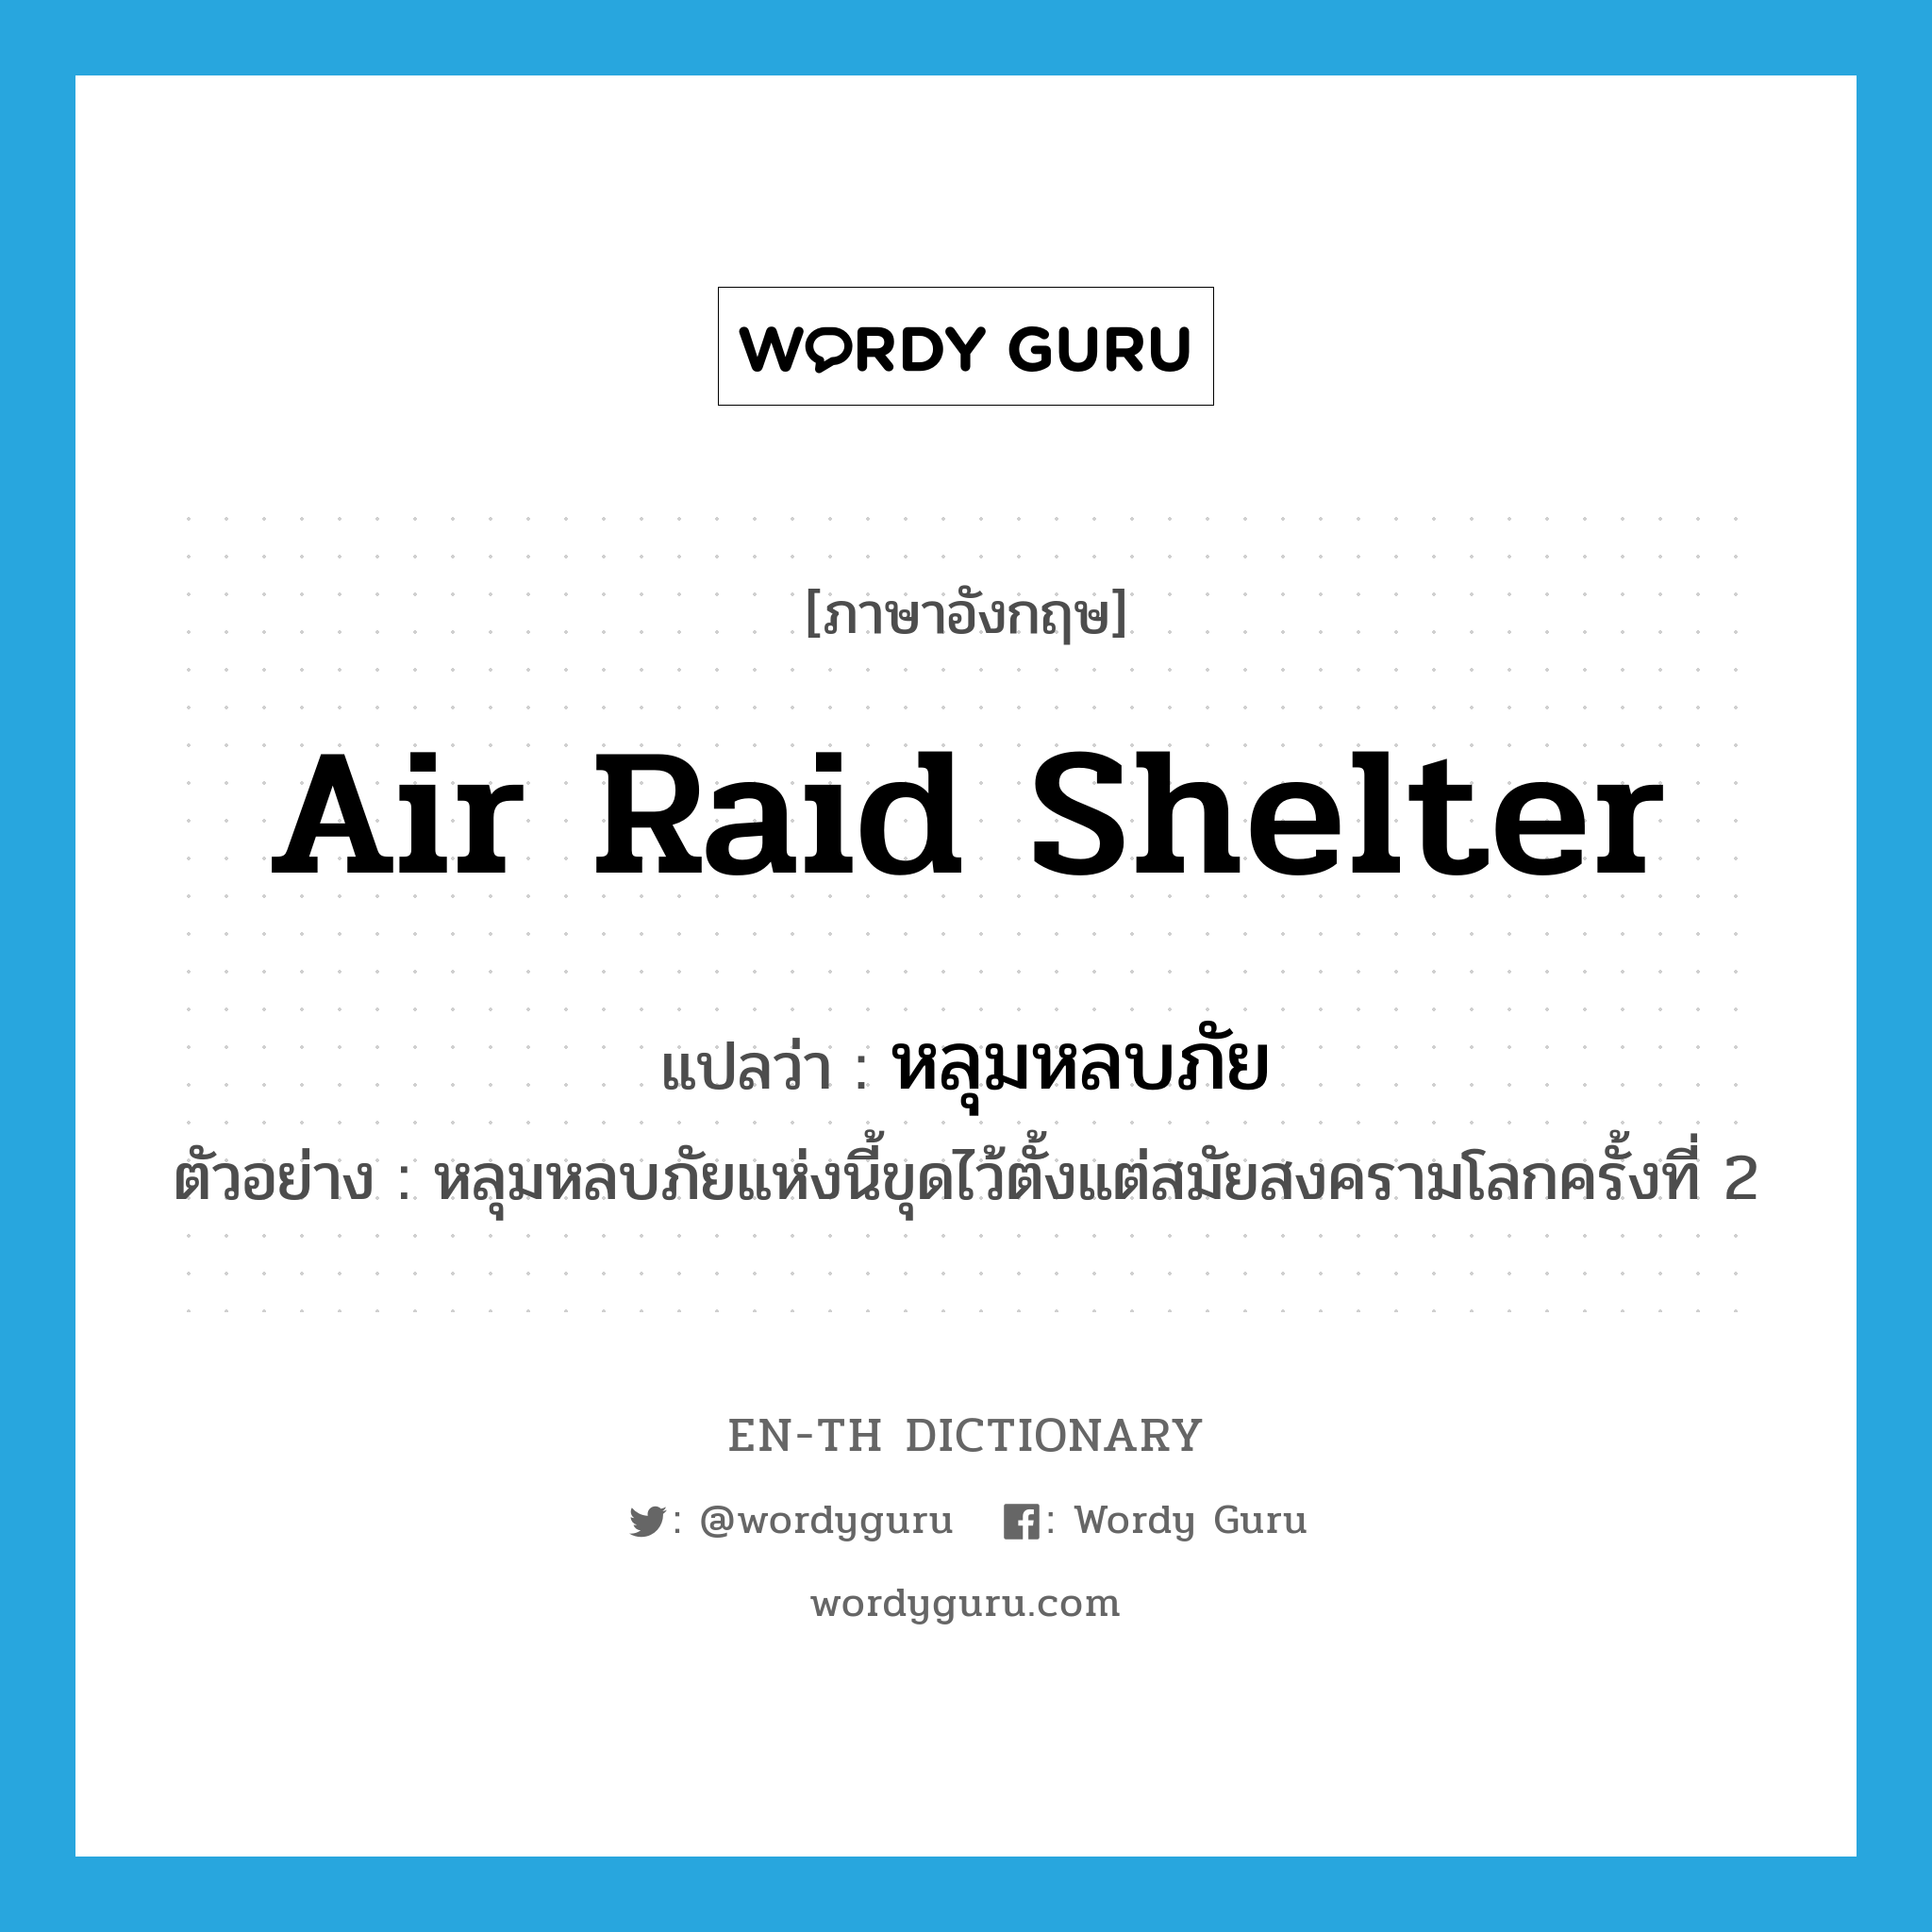 air raid shelter แปลว่า?, คำศัพท์ภาษาอังกฤษ air raid shelter แปลว่า หลุมหลบภัย ประเภท N ตัวอย่าง หลุมหลบภัยแห่งนี้ขุดไว้ตั้งแต่สมัยสงครามโลกครั้งที่ 2 หมวด N